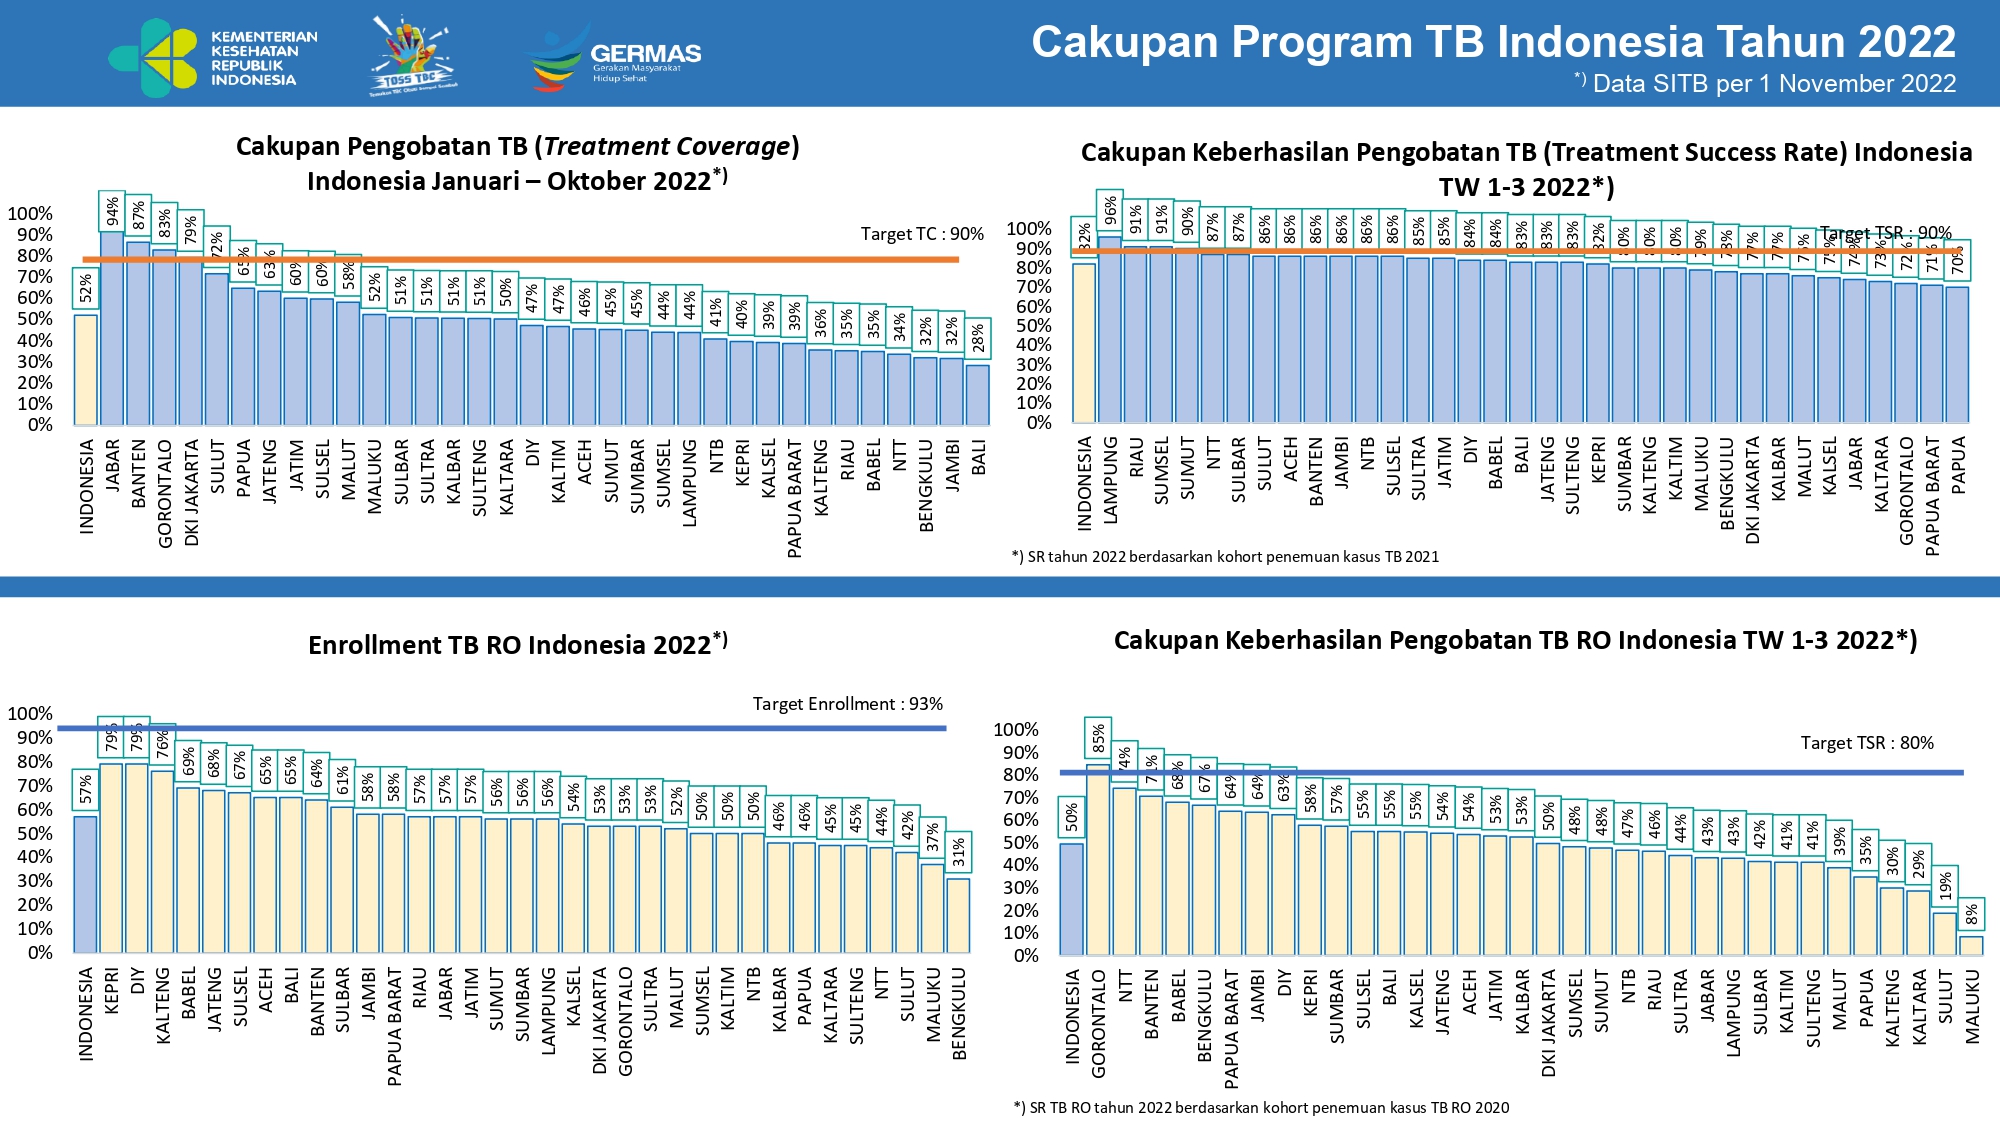 cakupan program TBC indonesia tahun 2022